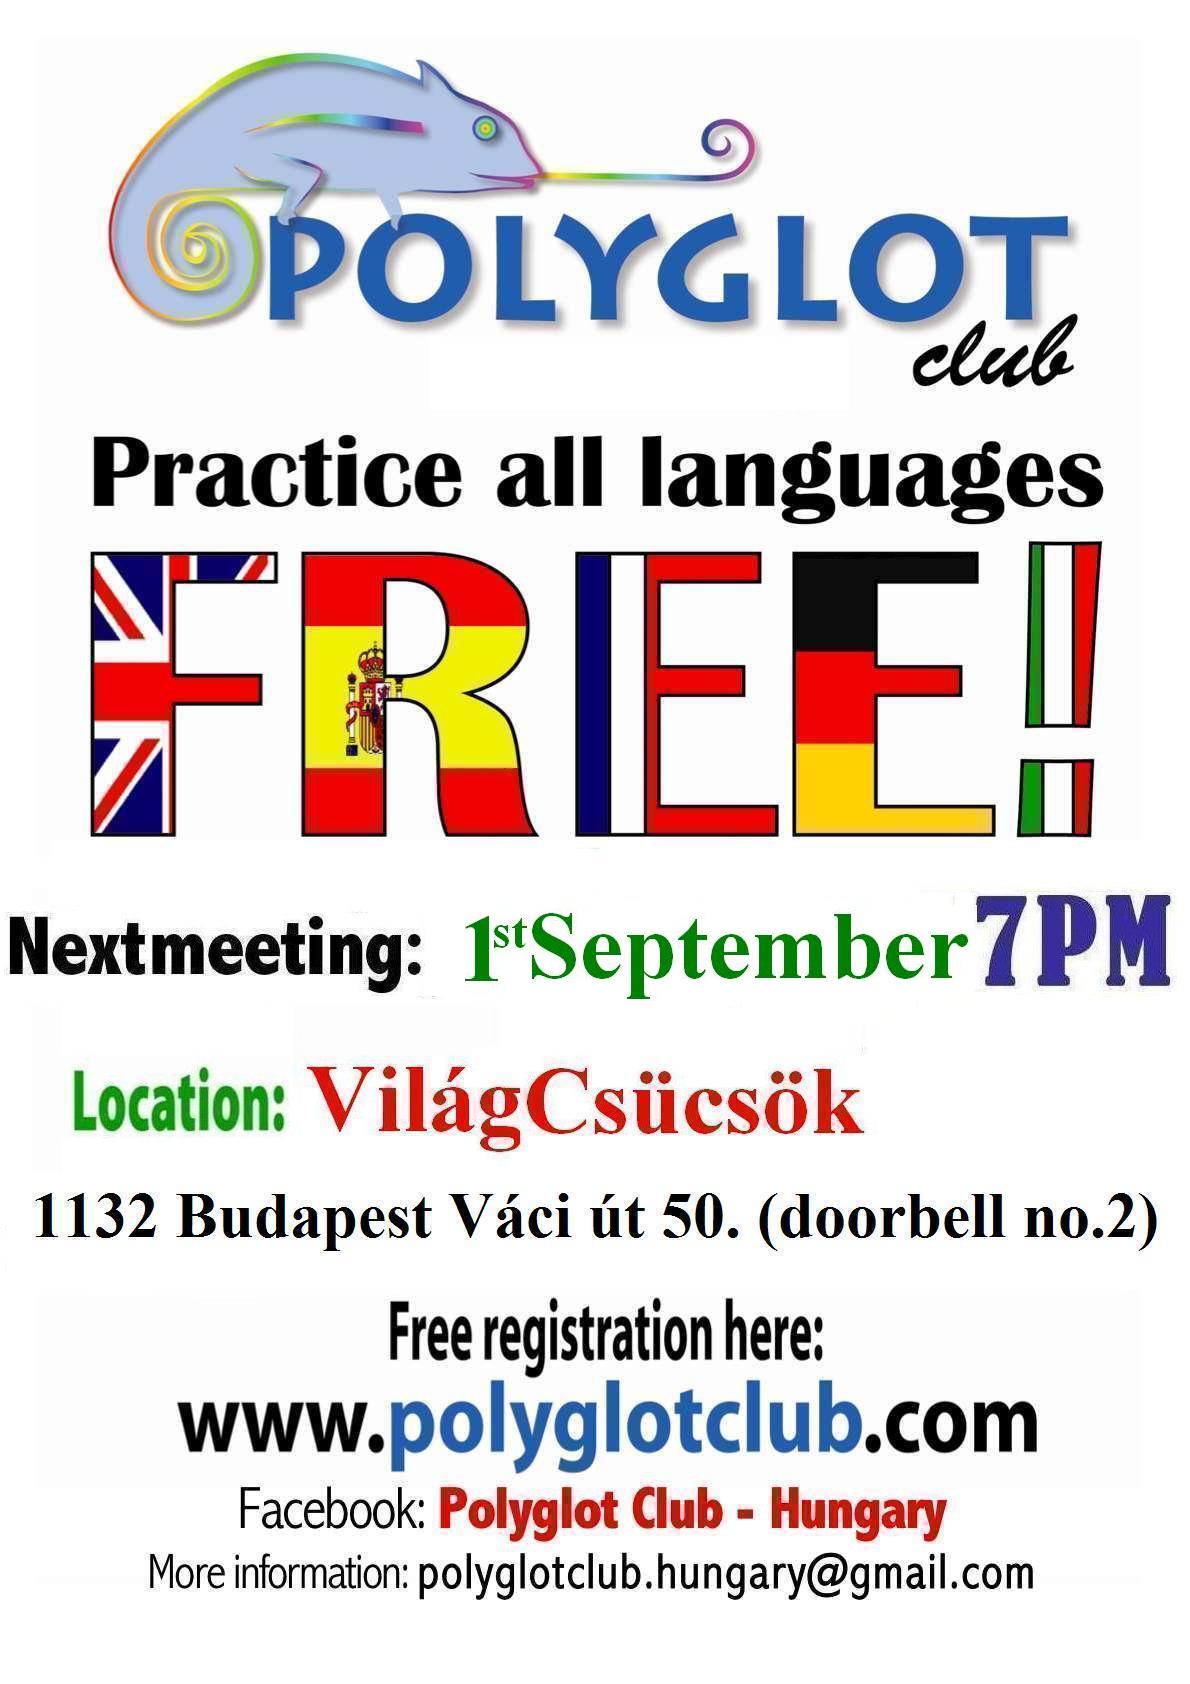 polyglotclub_vilagcsucsok_1st_september